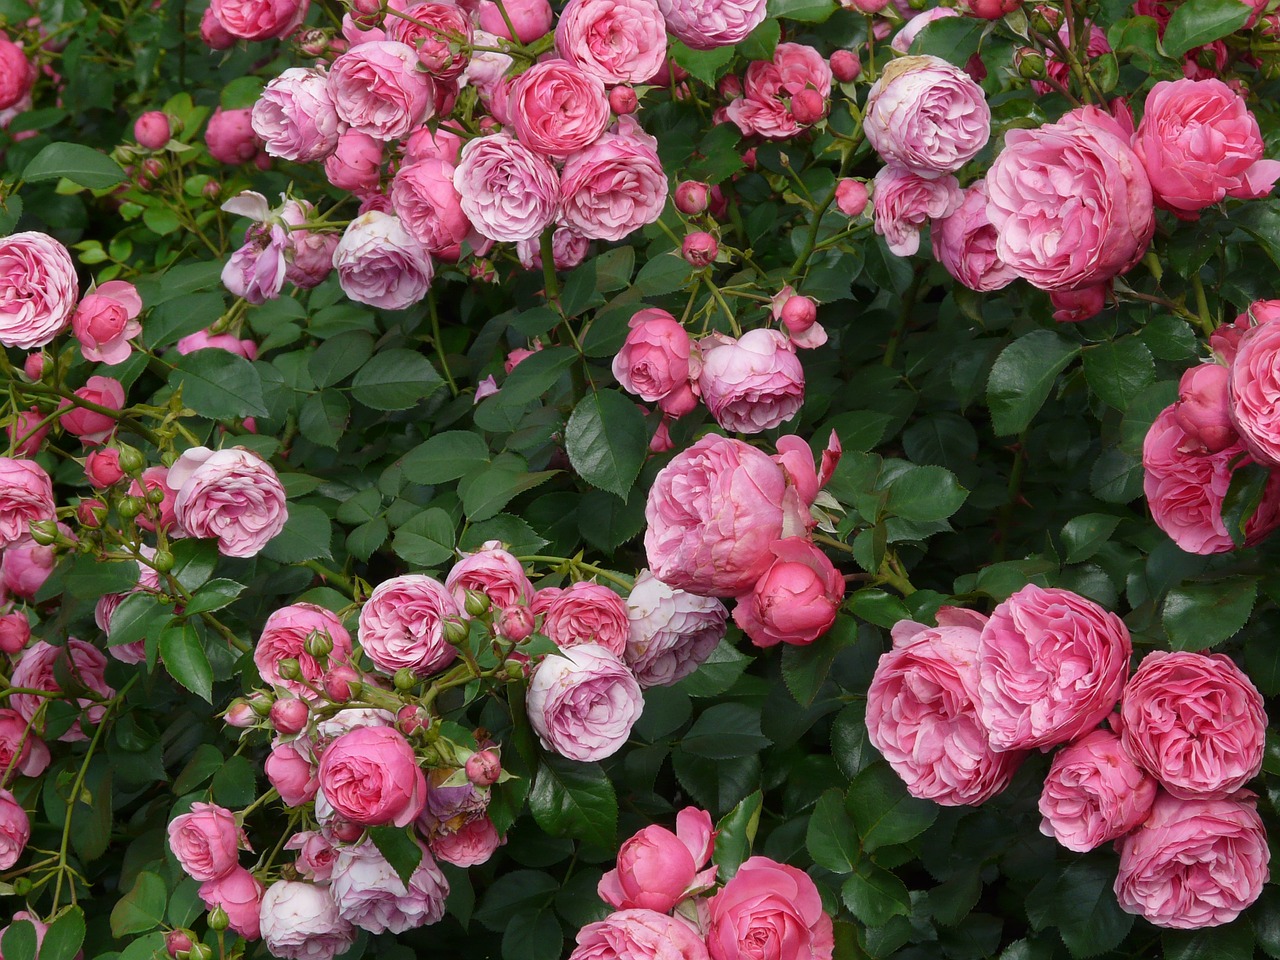 old rose wallpaper,flower,flowering plant,garden roses,rose,floribunda